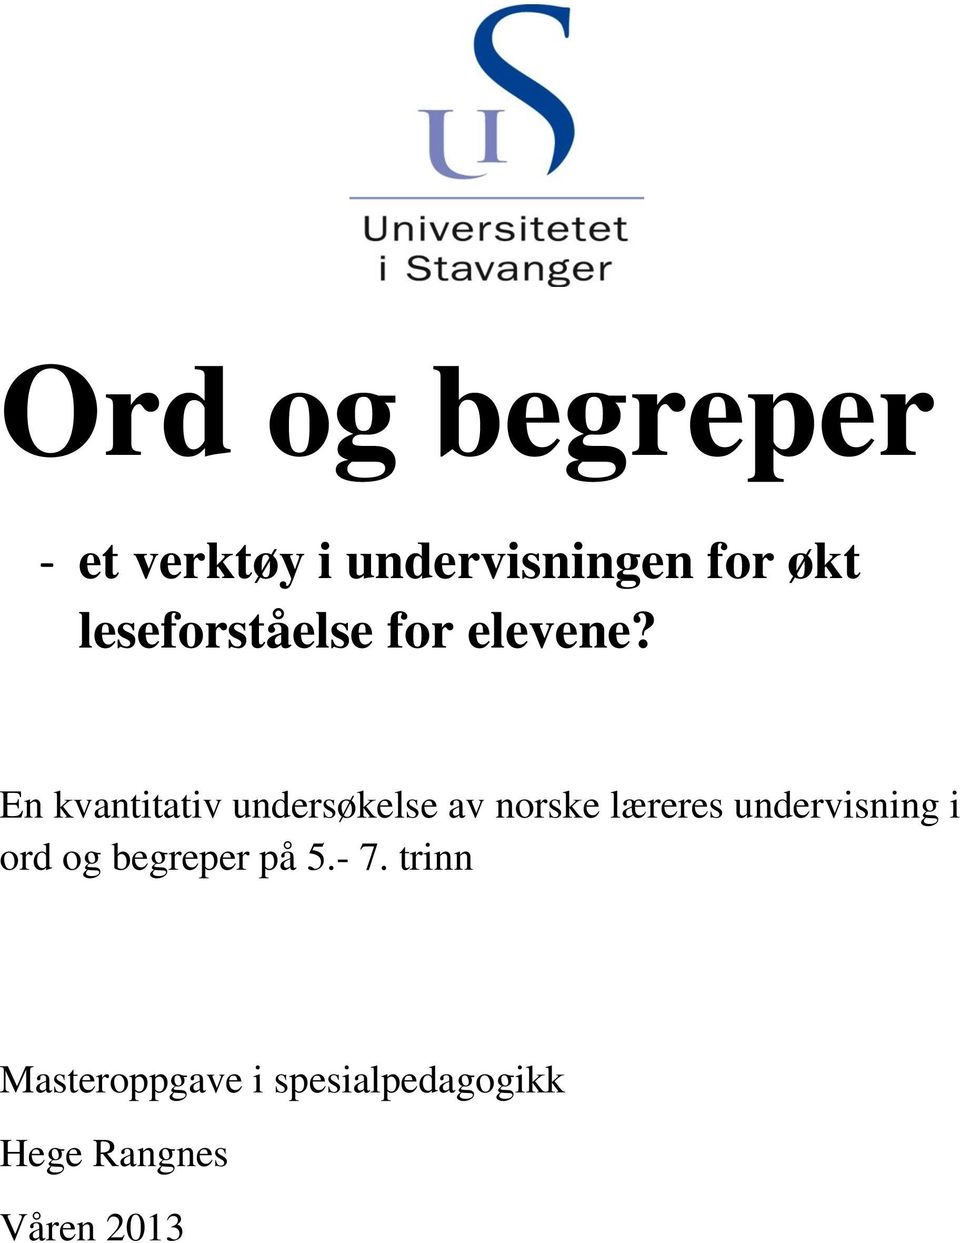 En kvantitativ undersøkelse av norske læreres